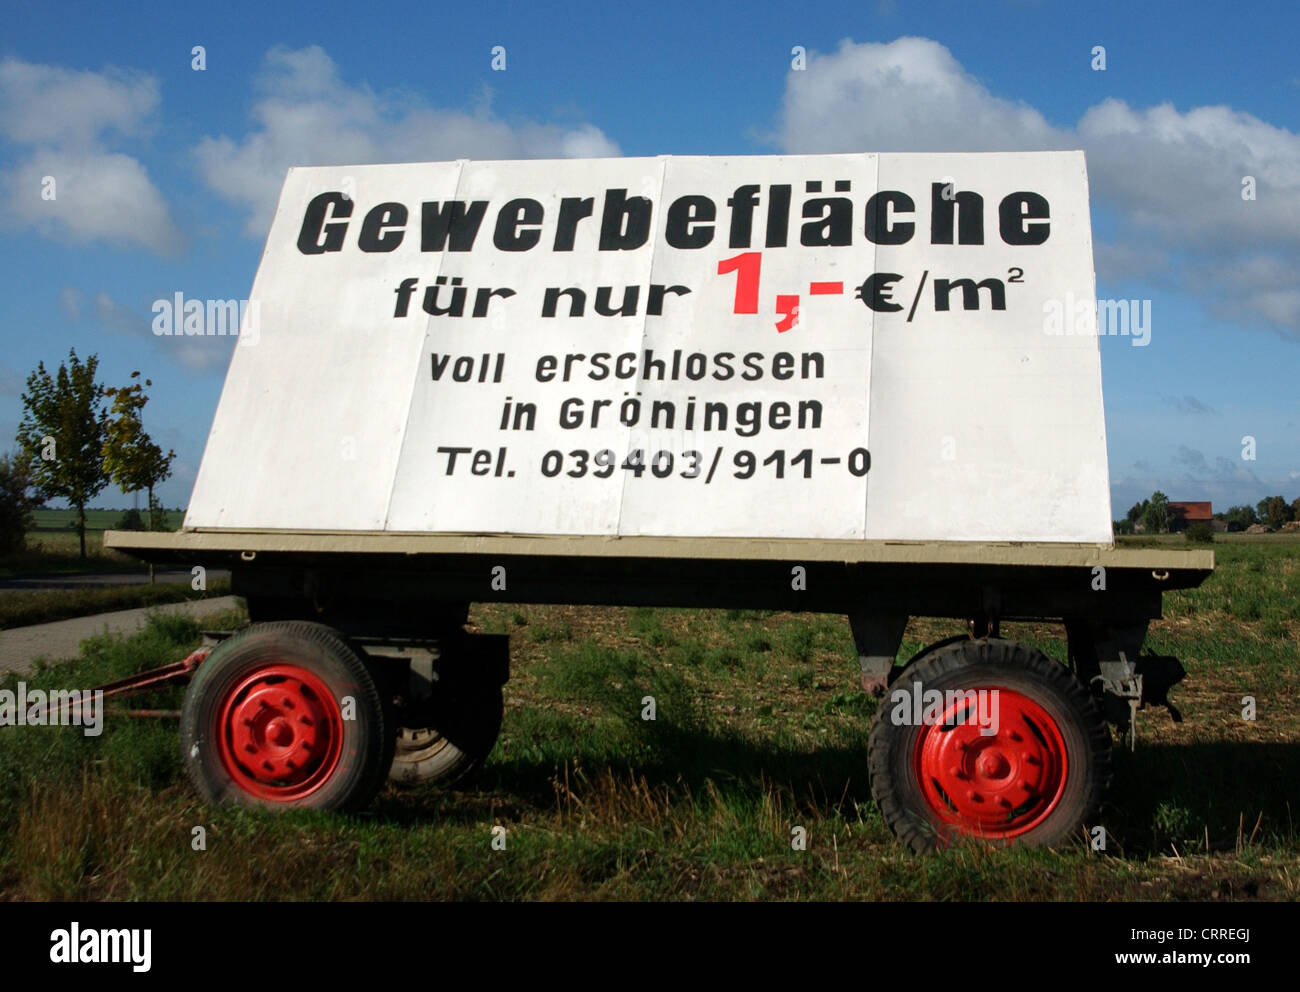 Oferta para Gewerbeflaeche en Sajonia-Anhalt Foto de stock